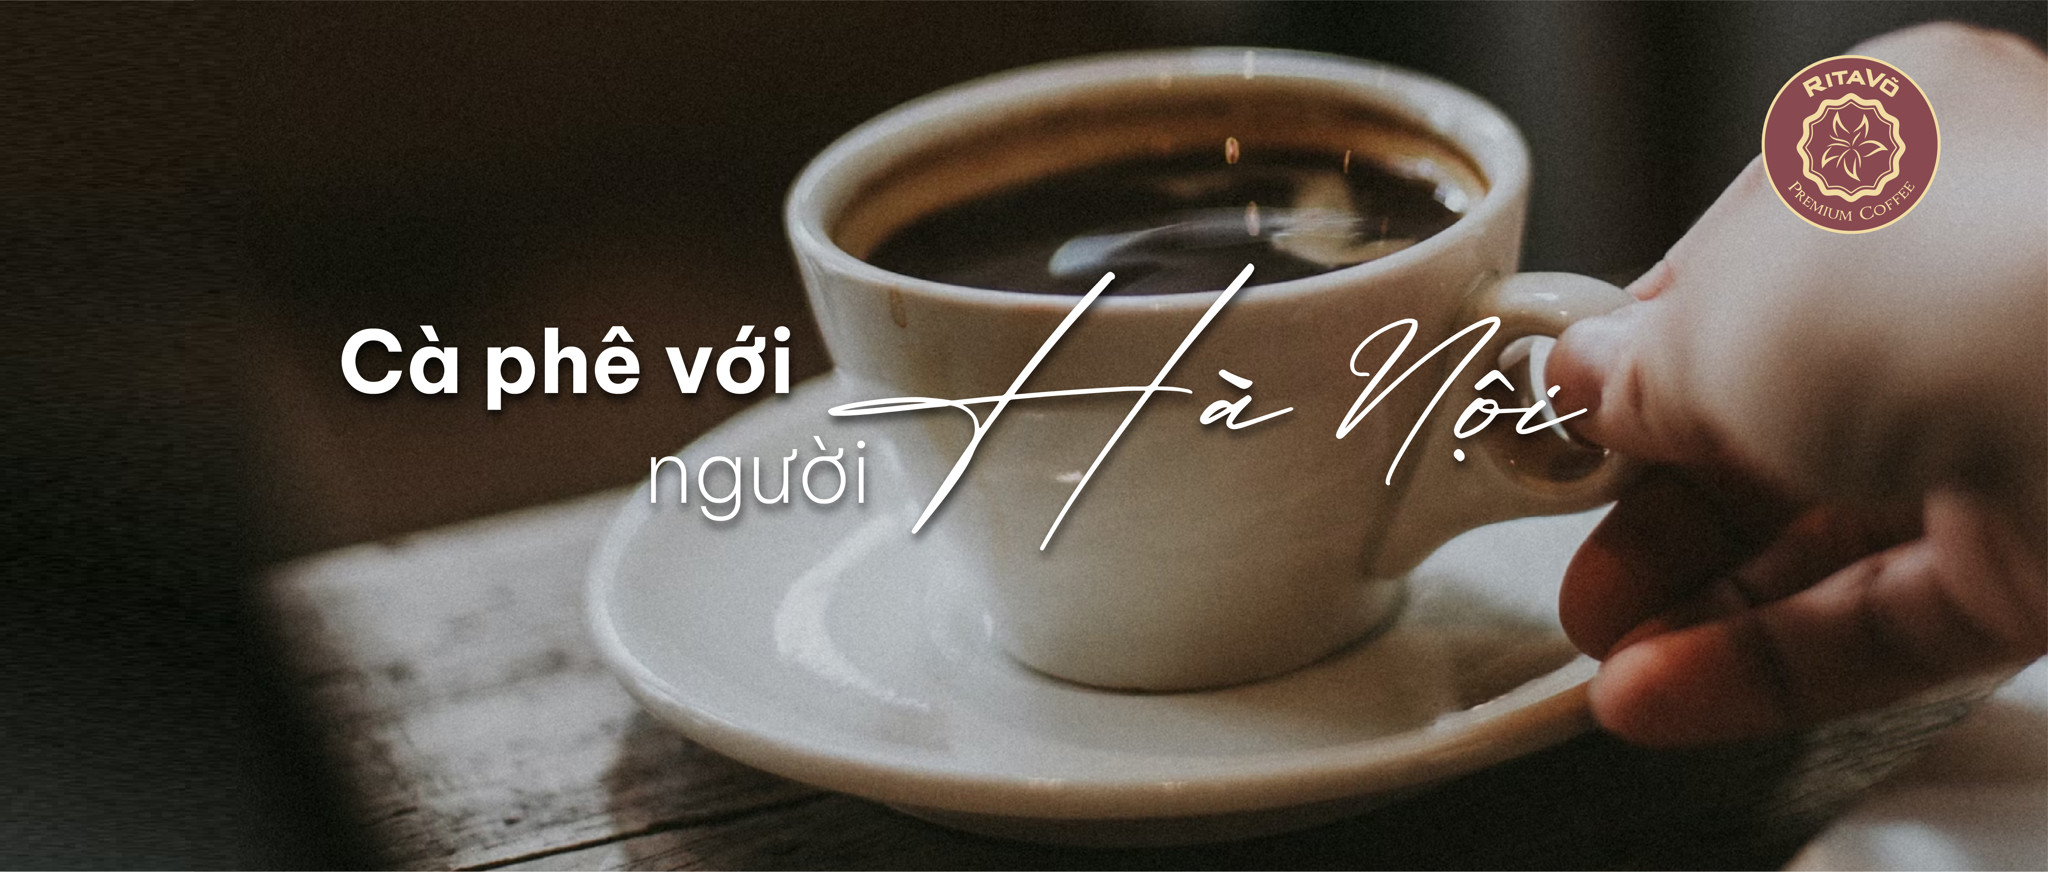 Cà phê với người Hà Nội